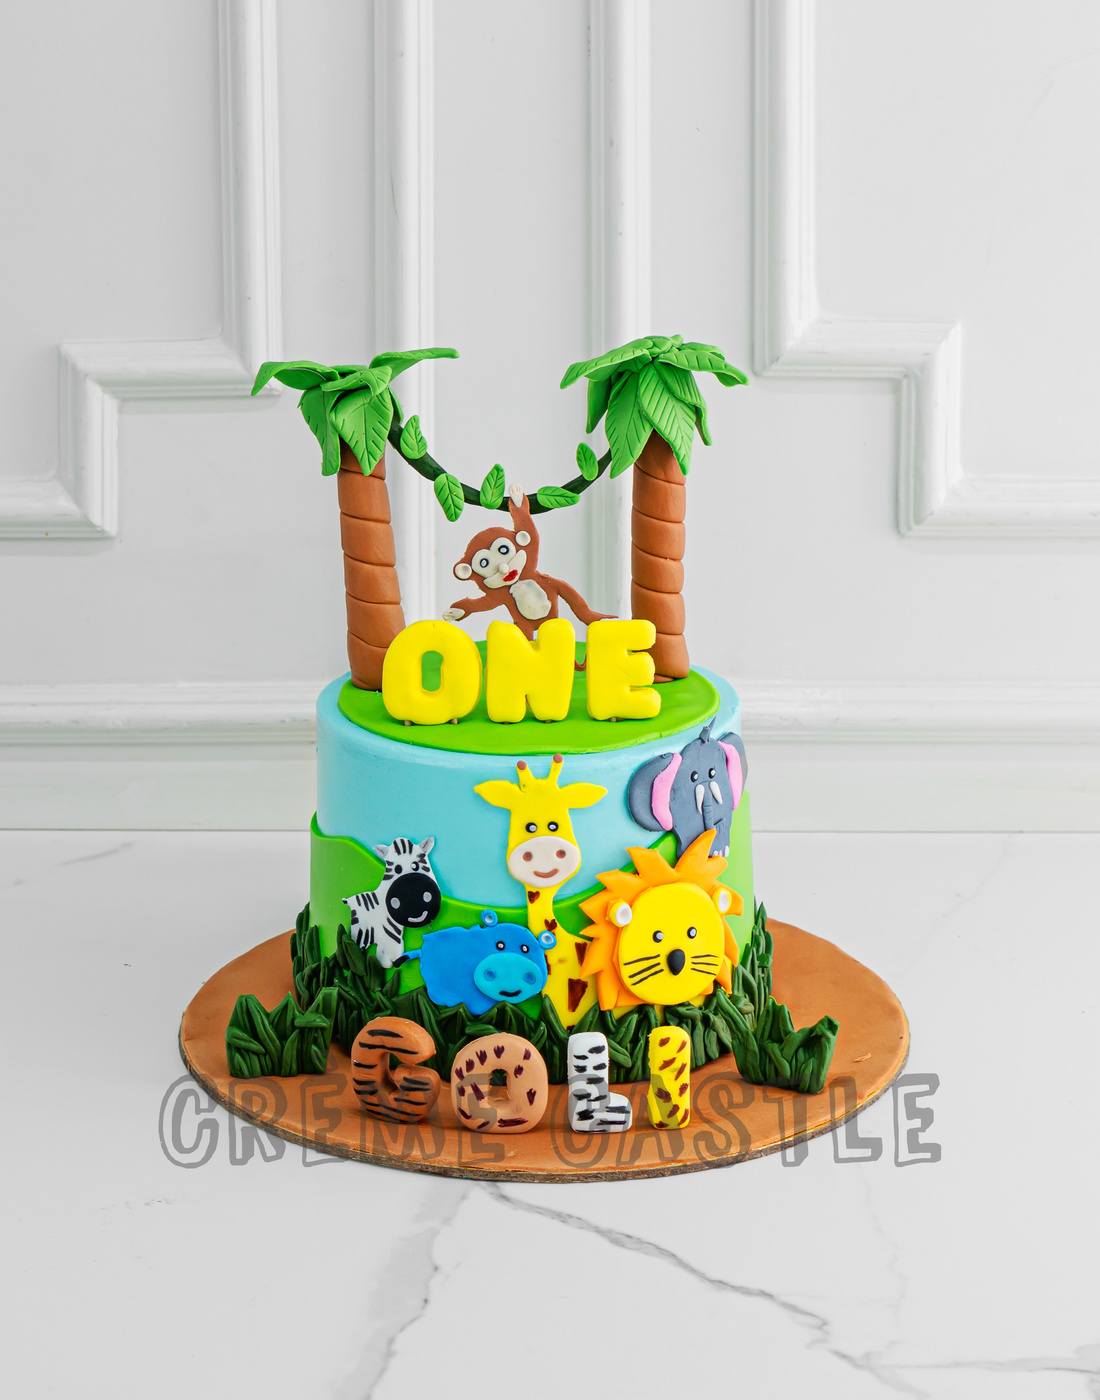 How To Make Jungle Theme Cake #jungle #cake - YouTube